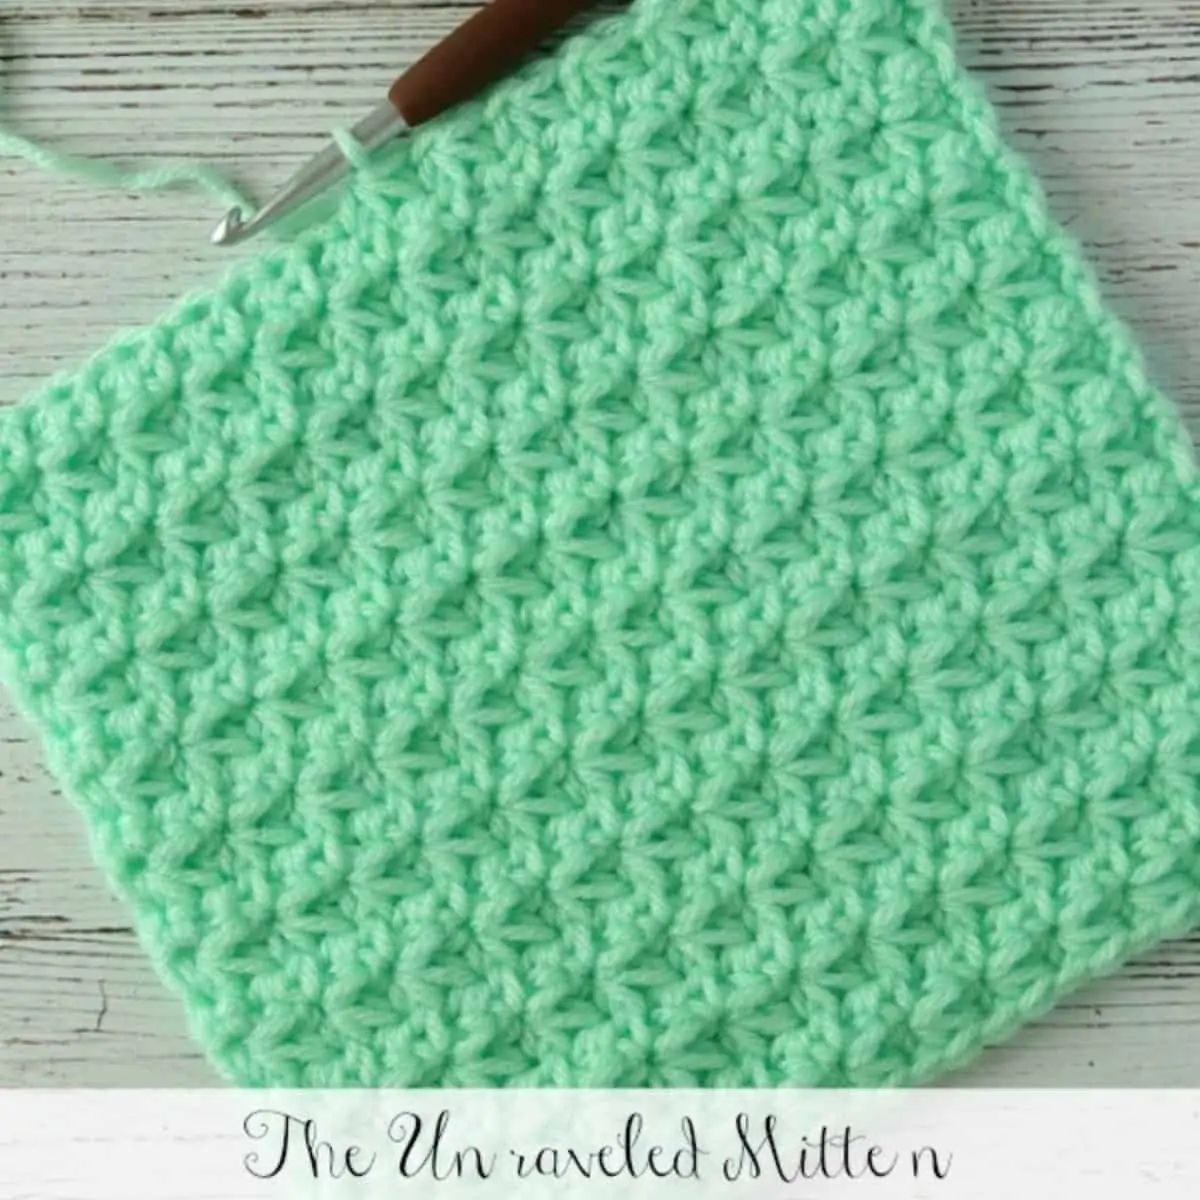 Mama's Easy Crochet Dishcloth - Crochet 365 Knit Too